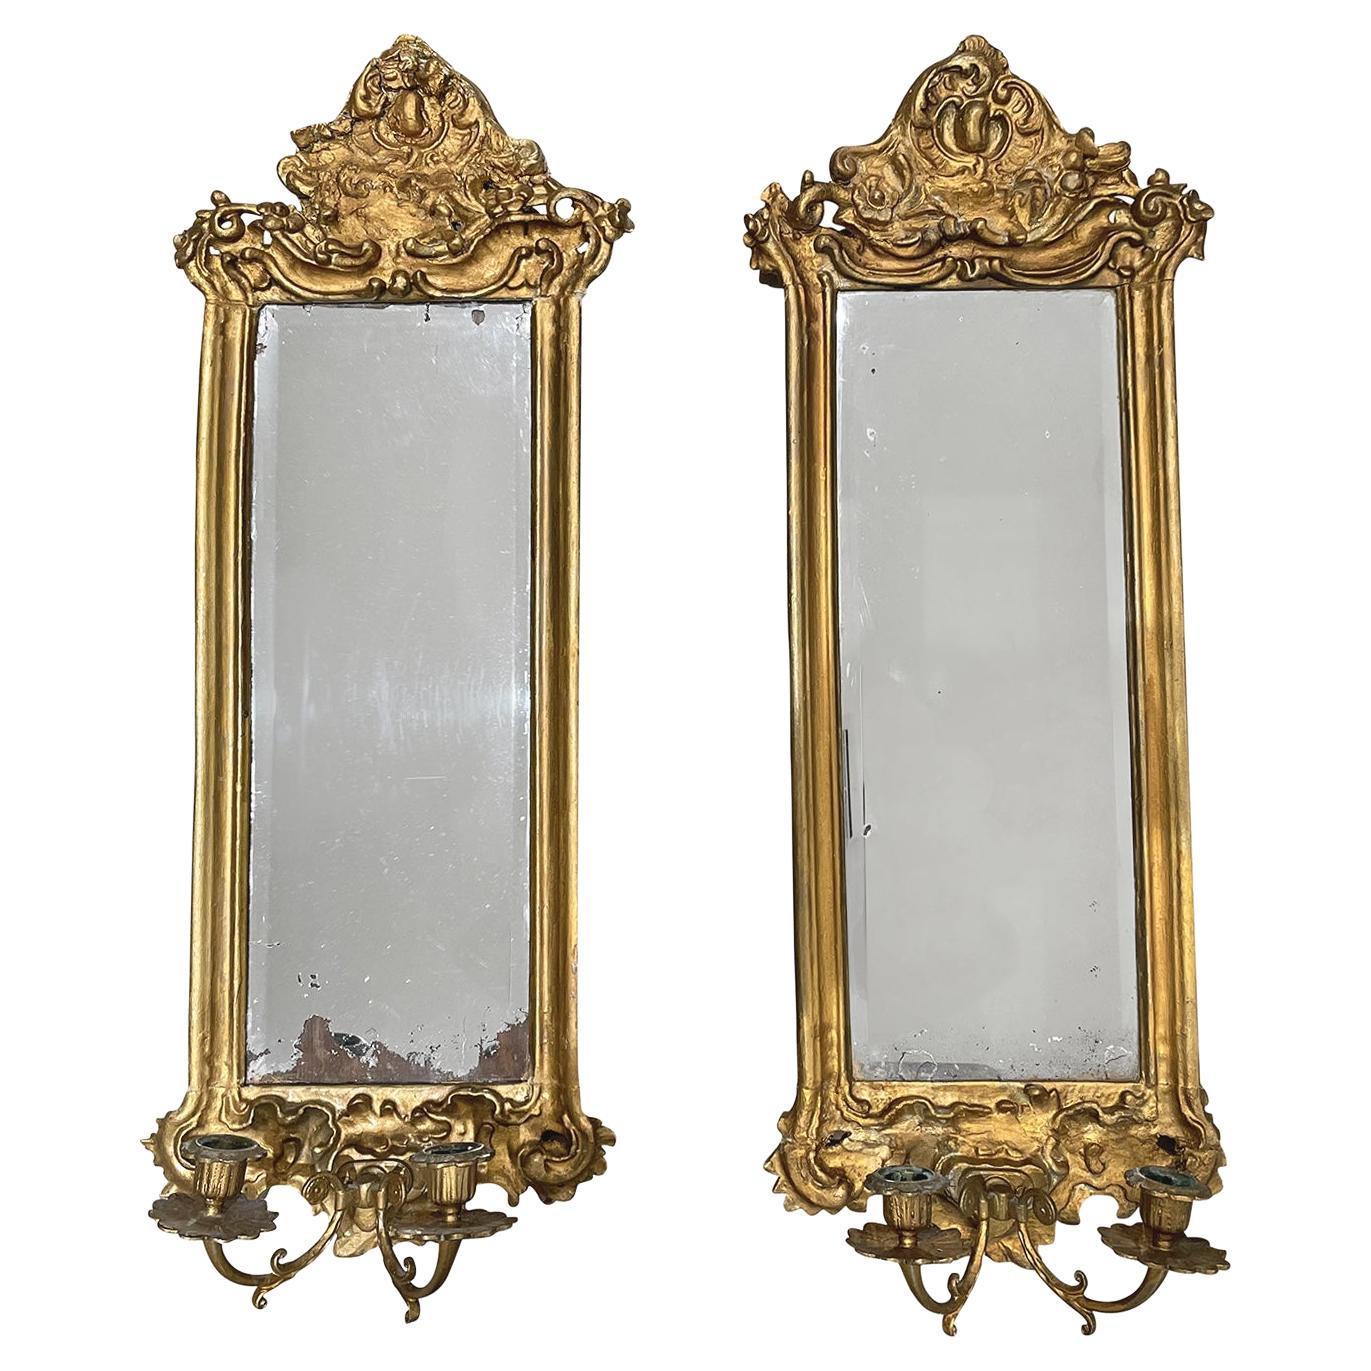 Paire de miroirs muraux gustaviens en bois doré du 18ème siècle de style suédois